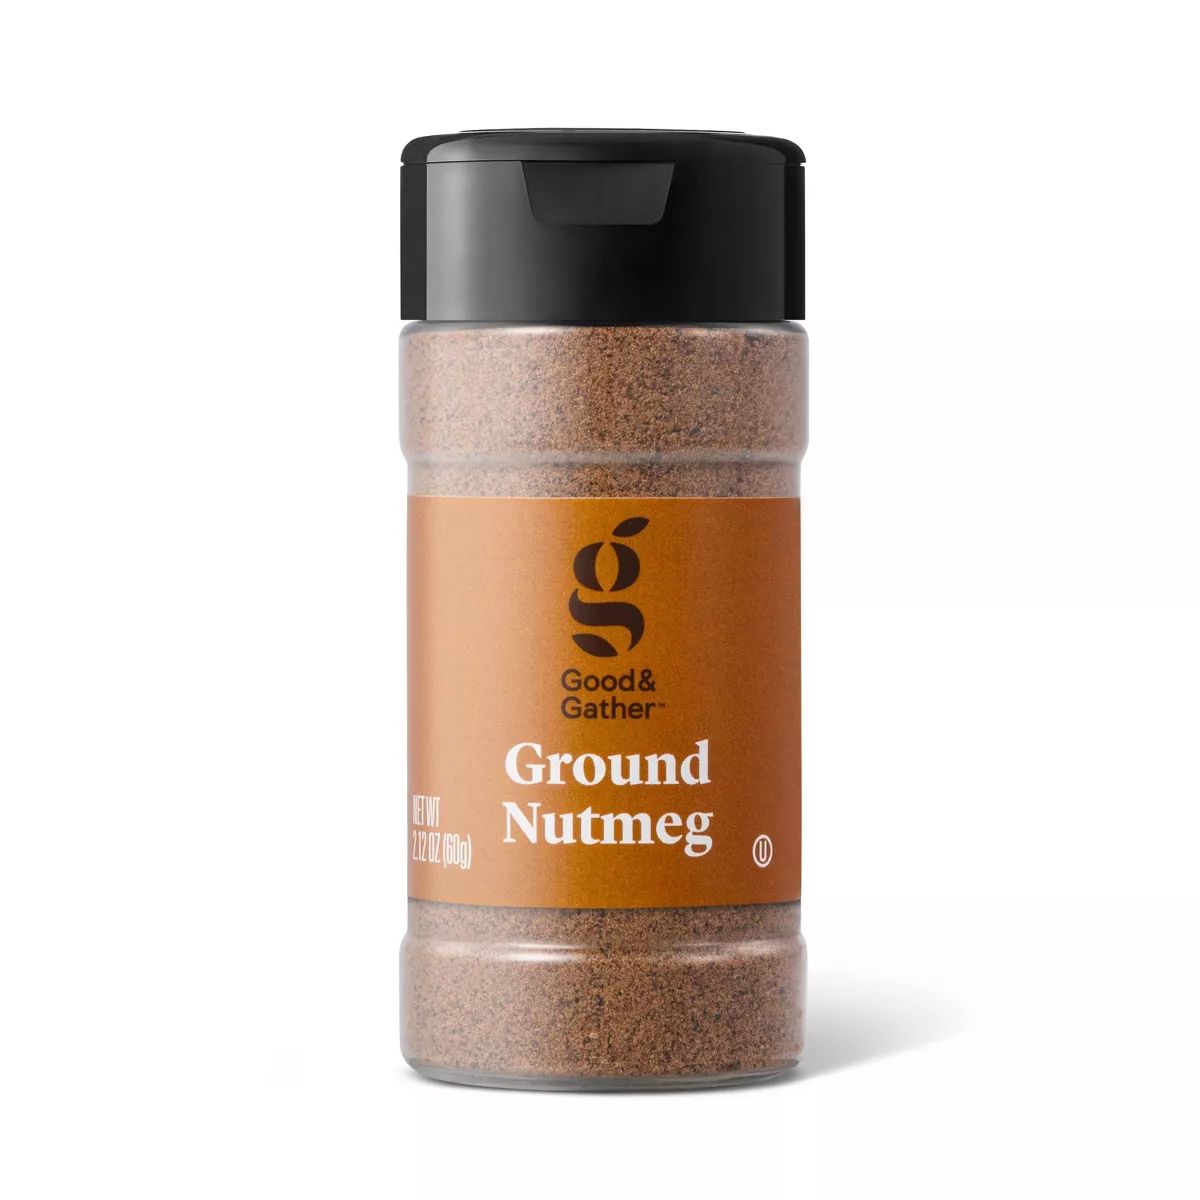 Ground Nutmeg - 2.12oz - Good & Gather™ | Target